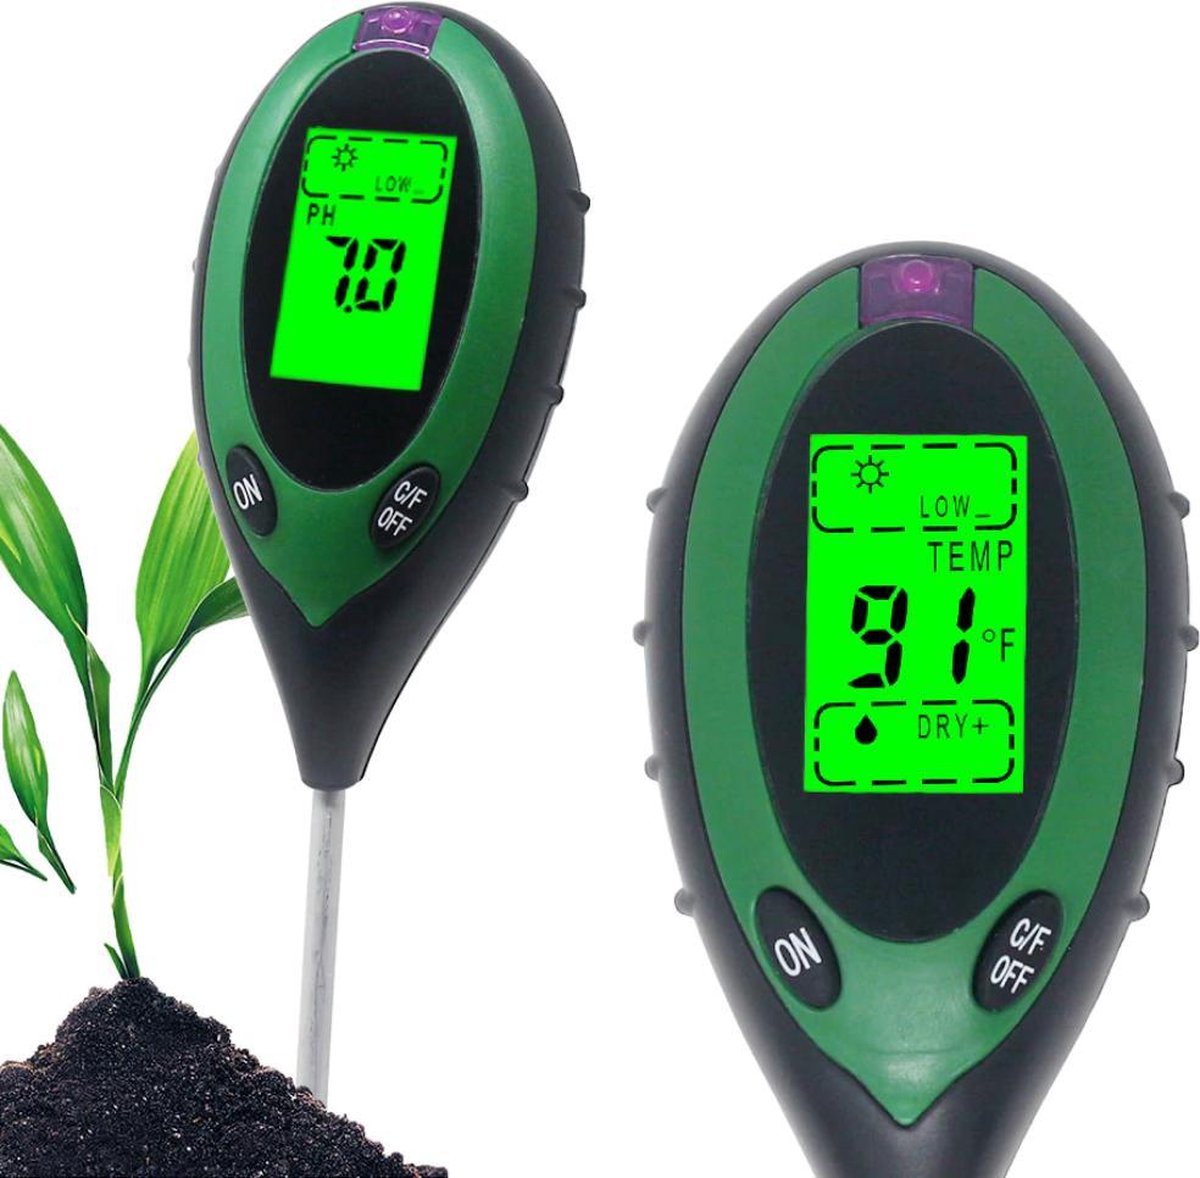 Vochtmeter planten - 4 in 1 - Vochtmeter - Watermeter - PH-meter - Vochtigheidsmeter Planten - Grondmeter - Watermeter voor kamerplanten- Groen - Incl. Batterij